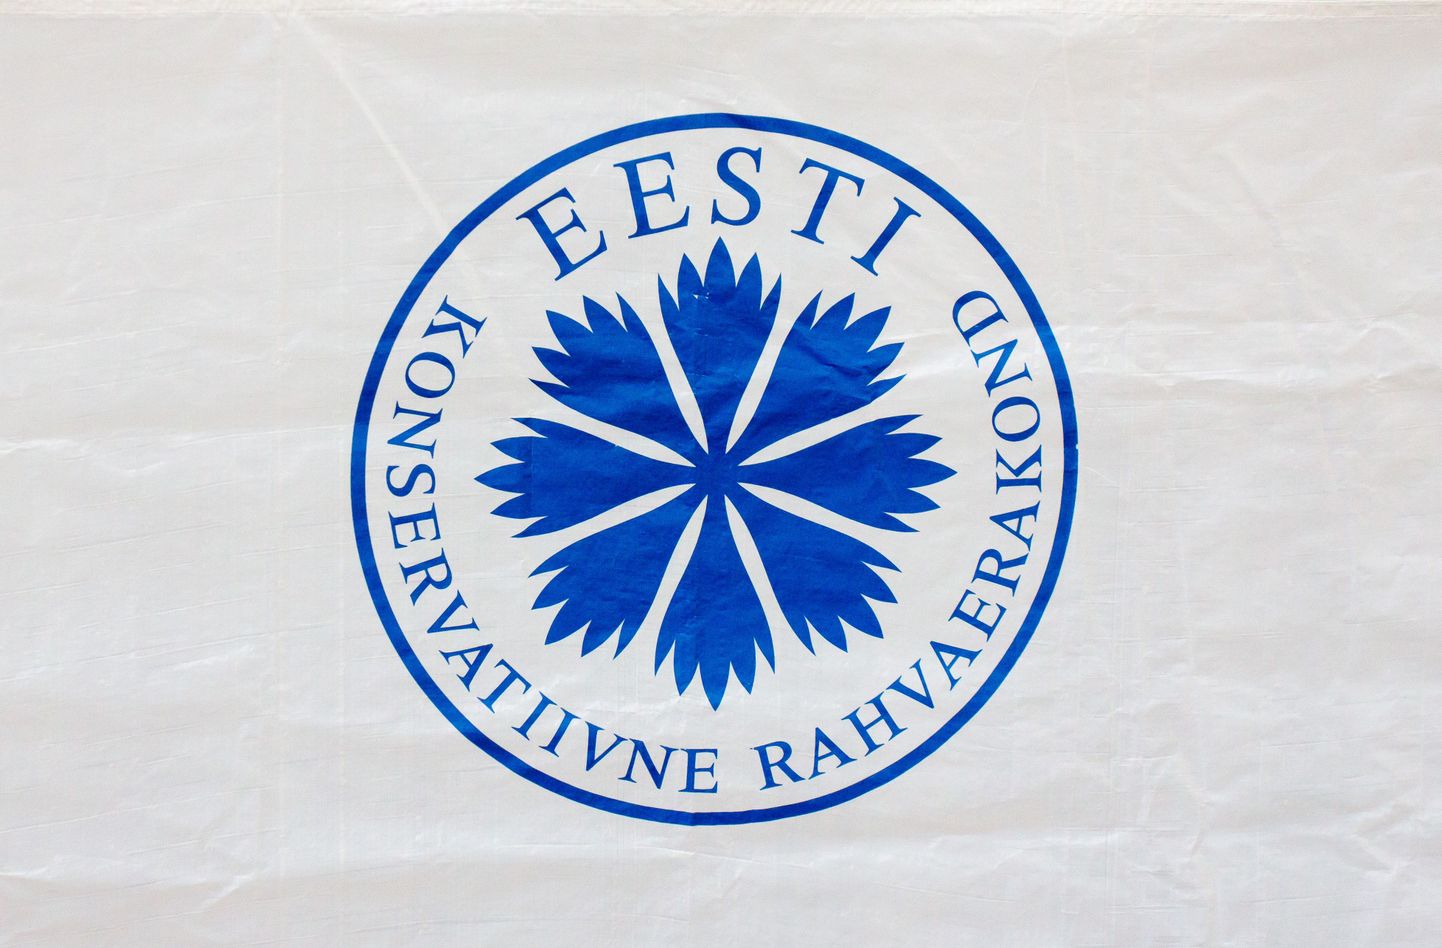 Eesti Konservatiivse Rahvaerakonna (EKRE) logo.